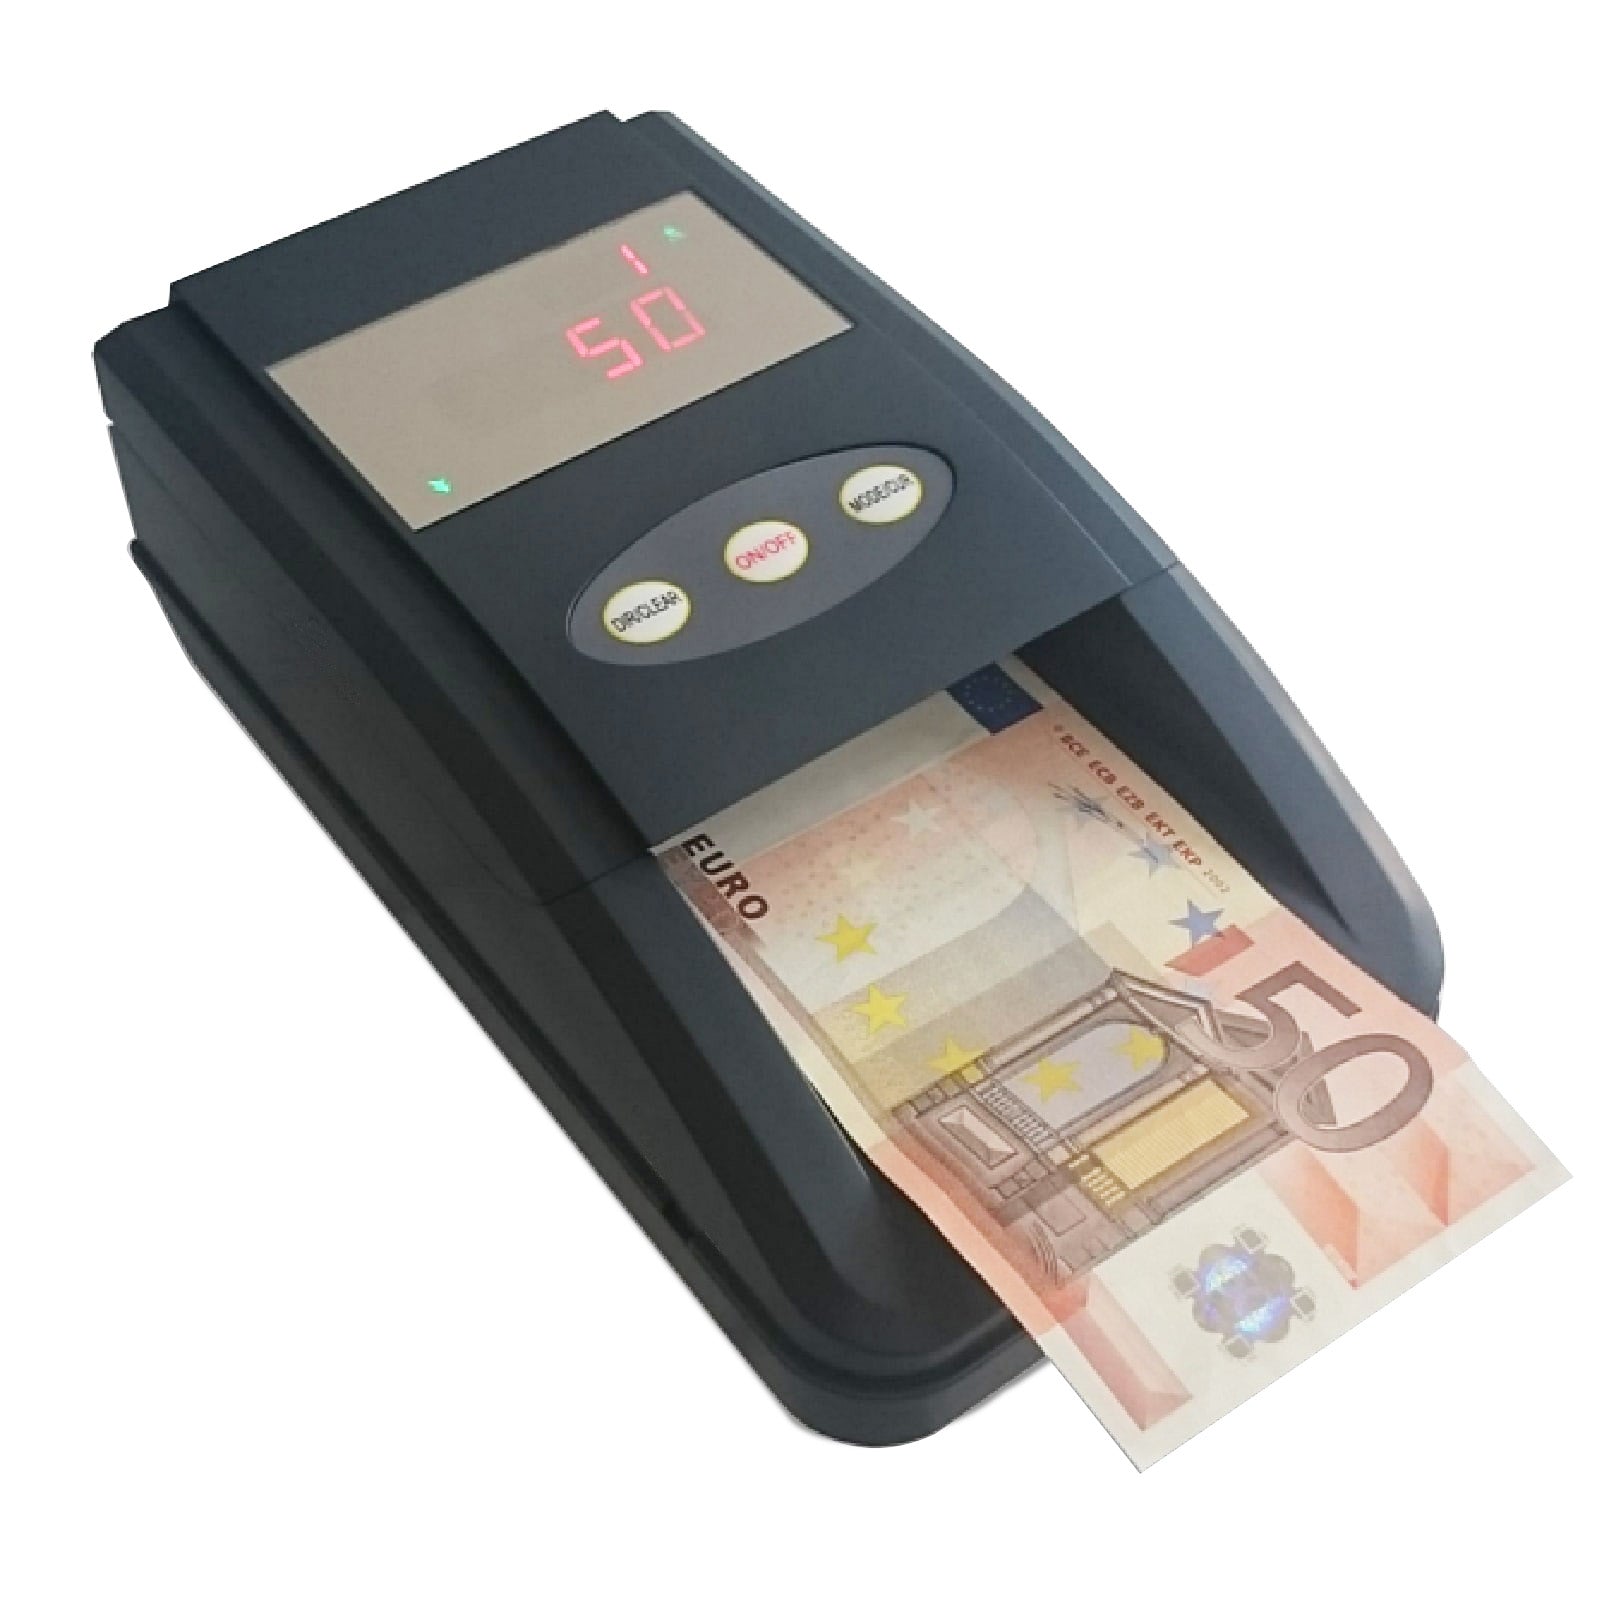 Rilevatore Banconote False Archivi - Controlla e Verifica